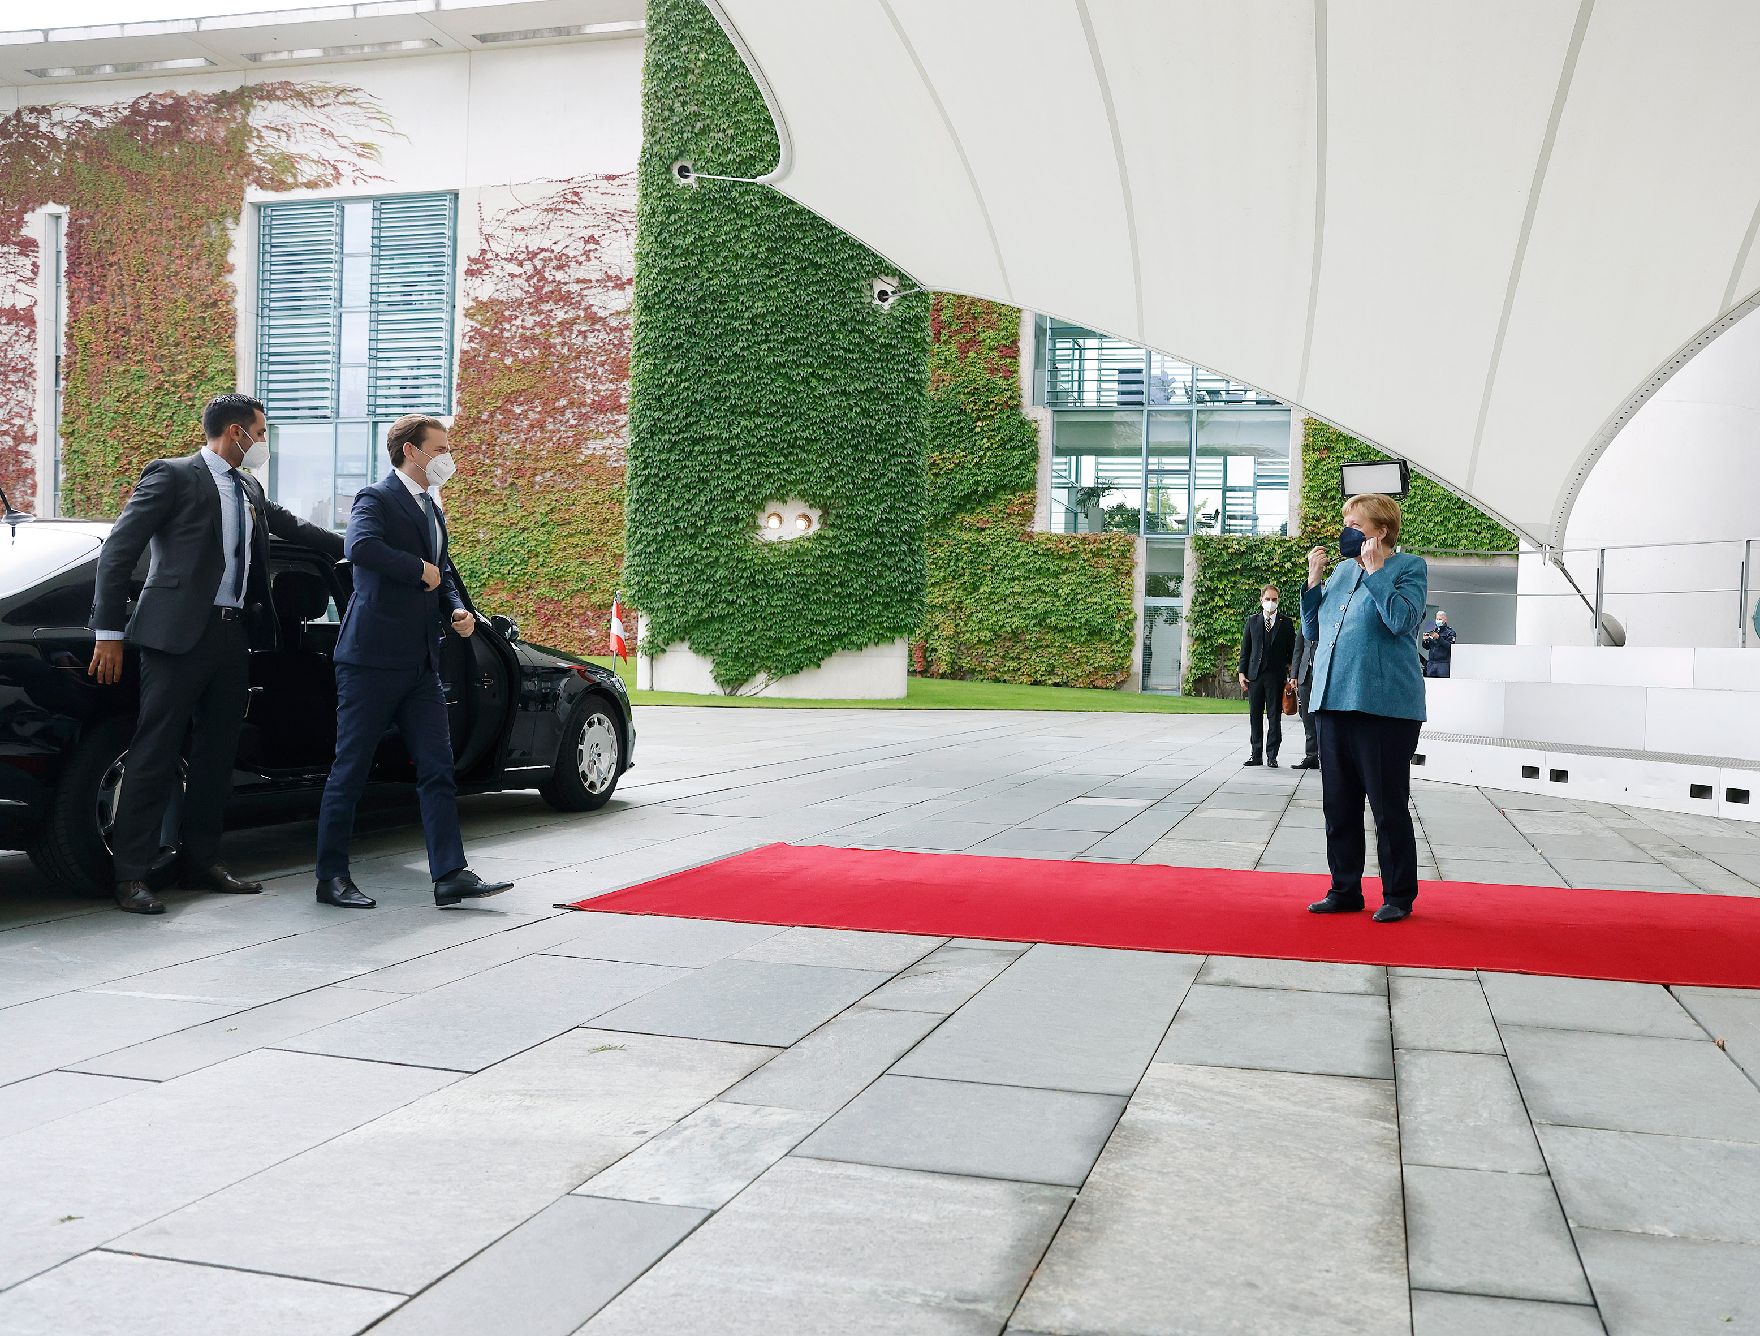 Am 31. August 2021 traf Bundeskanzler Sebastian Kurz (l.) im Rahmen seines Arbeitsbesuchs in Berlin die deutsche Bundeskanzlerin Angela Merkel (r.).